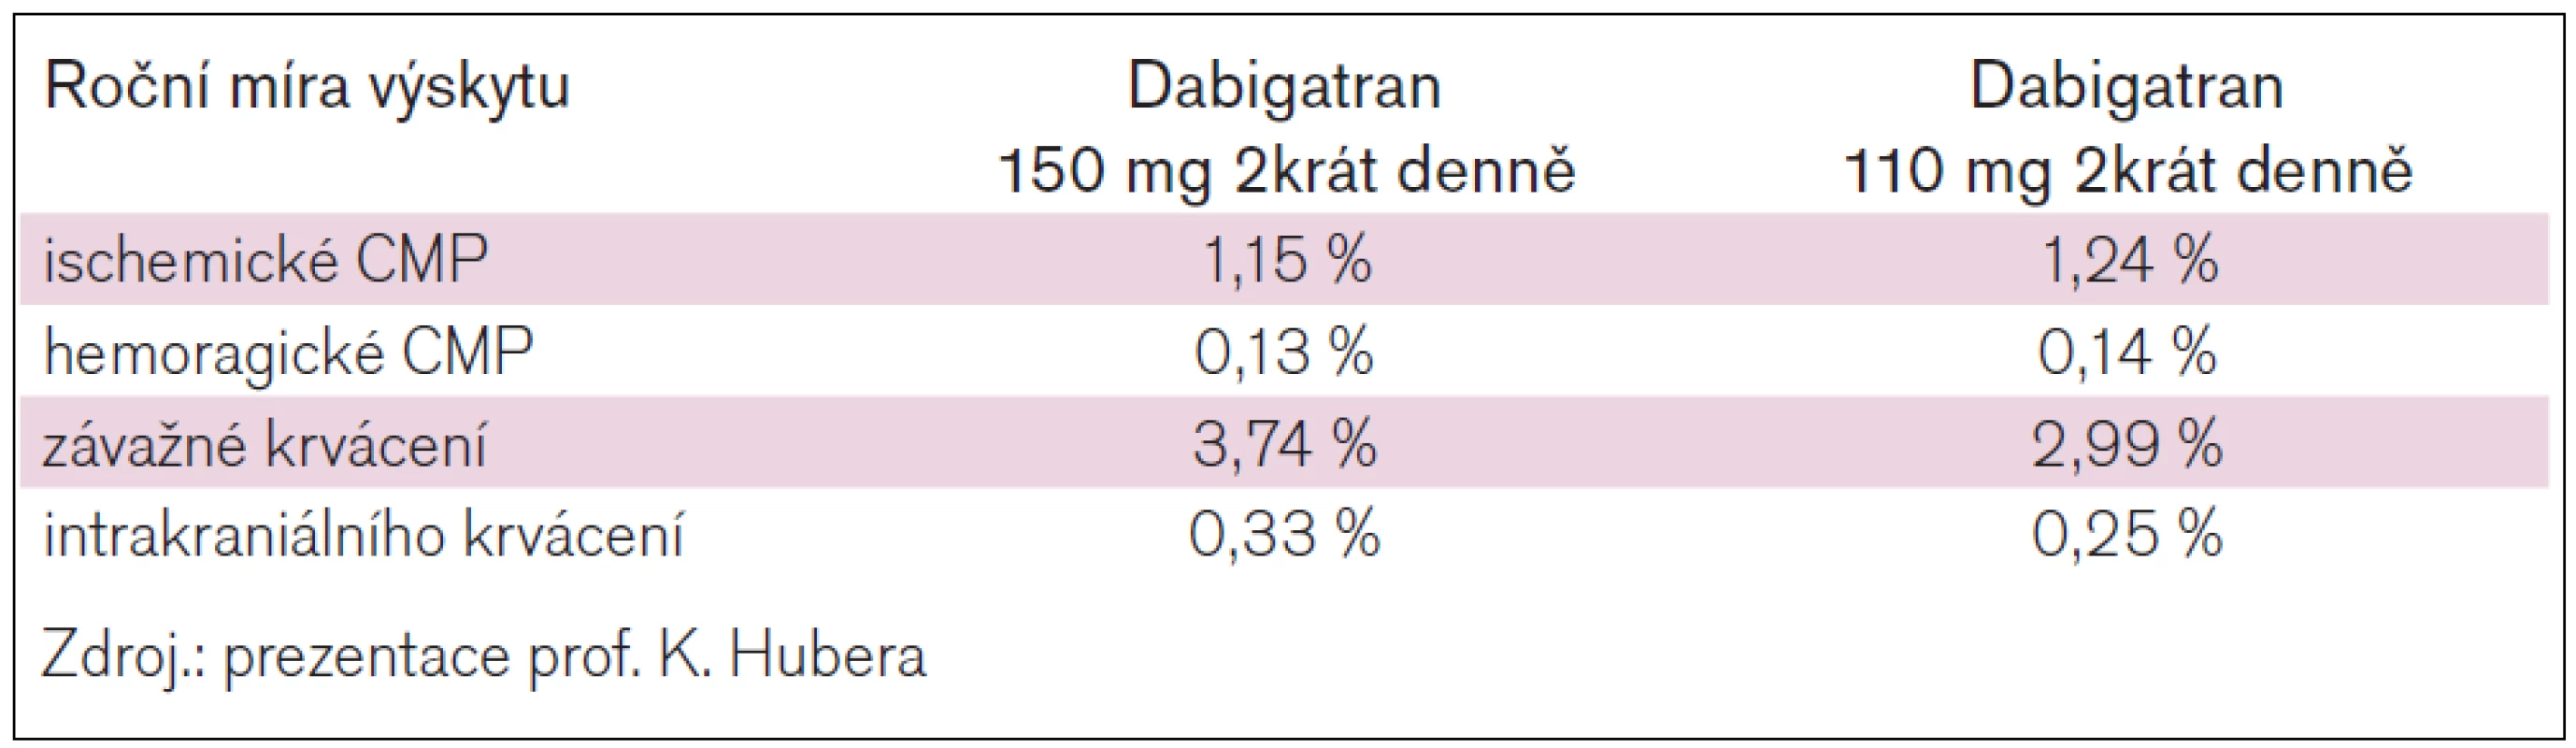 Výsledky RELY-ABLE (2,3 roční pokračování zaslepeného podávání dabigatranu pacientům ze studie RE-LY).